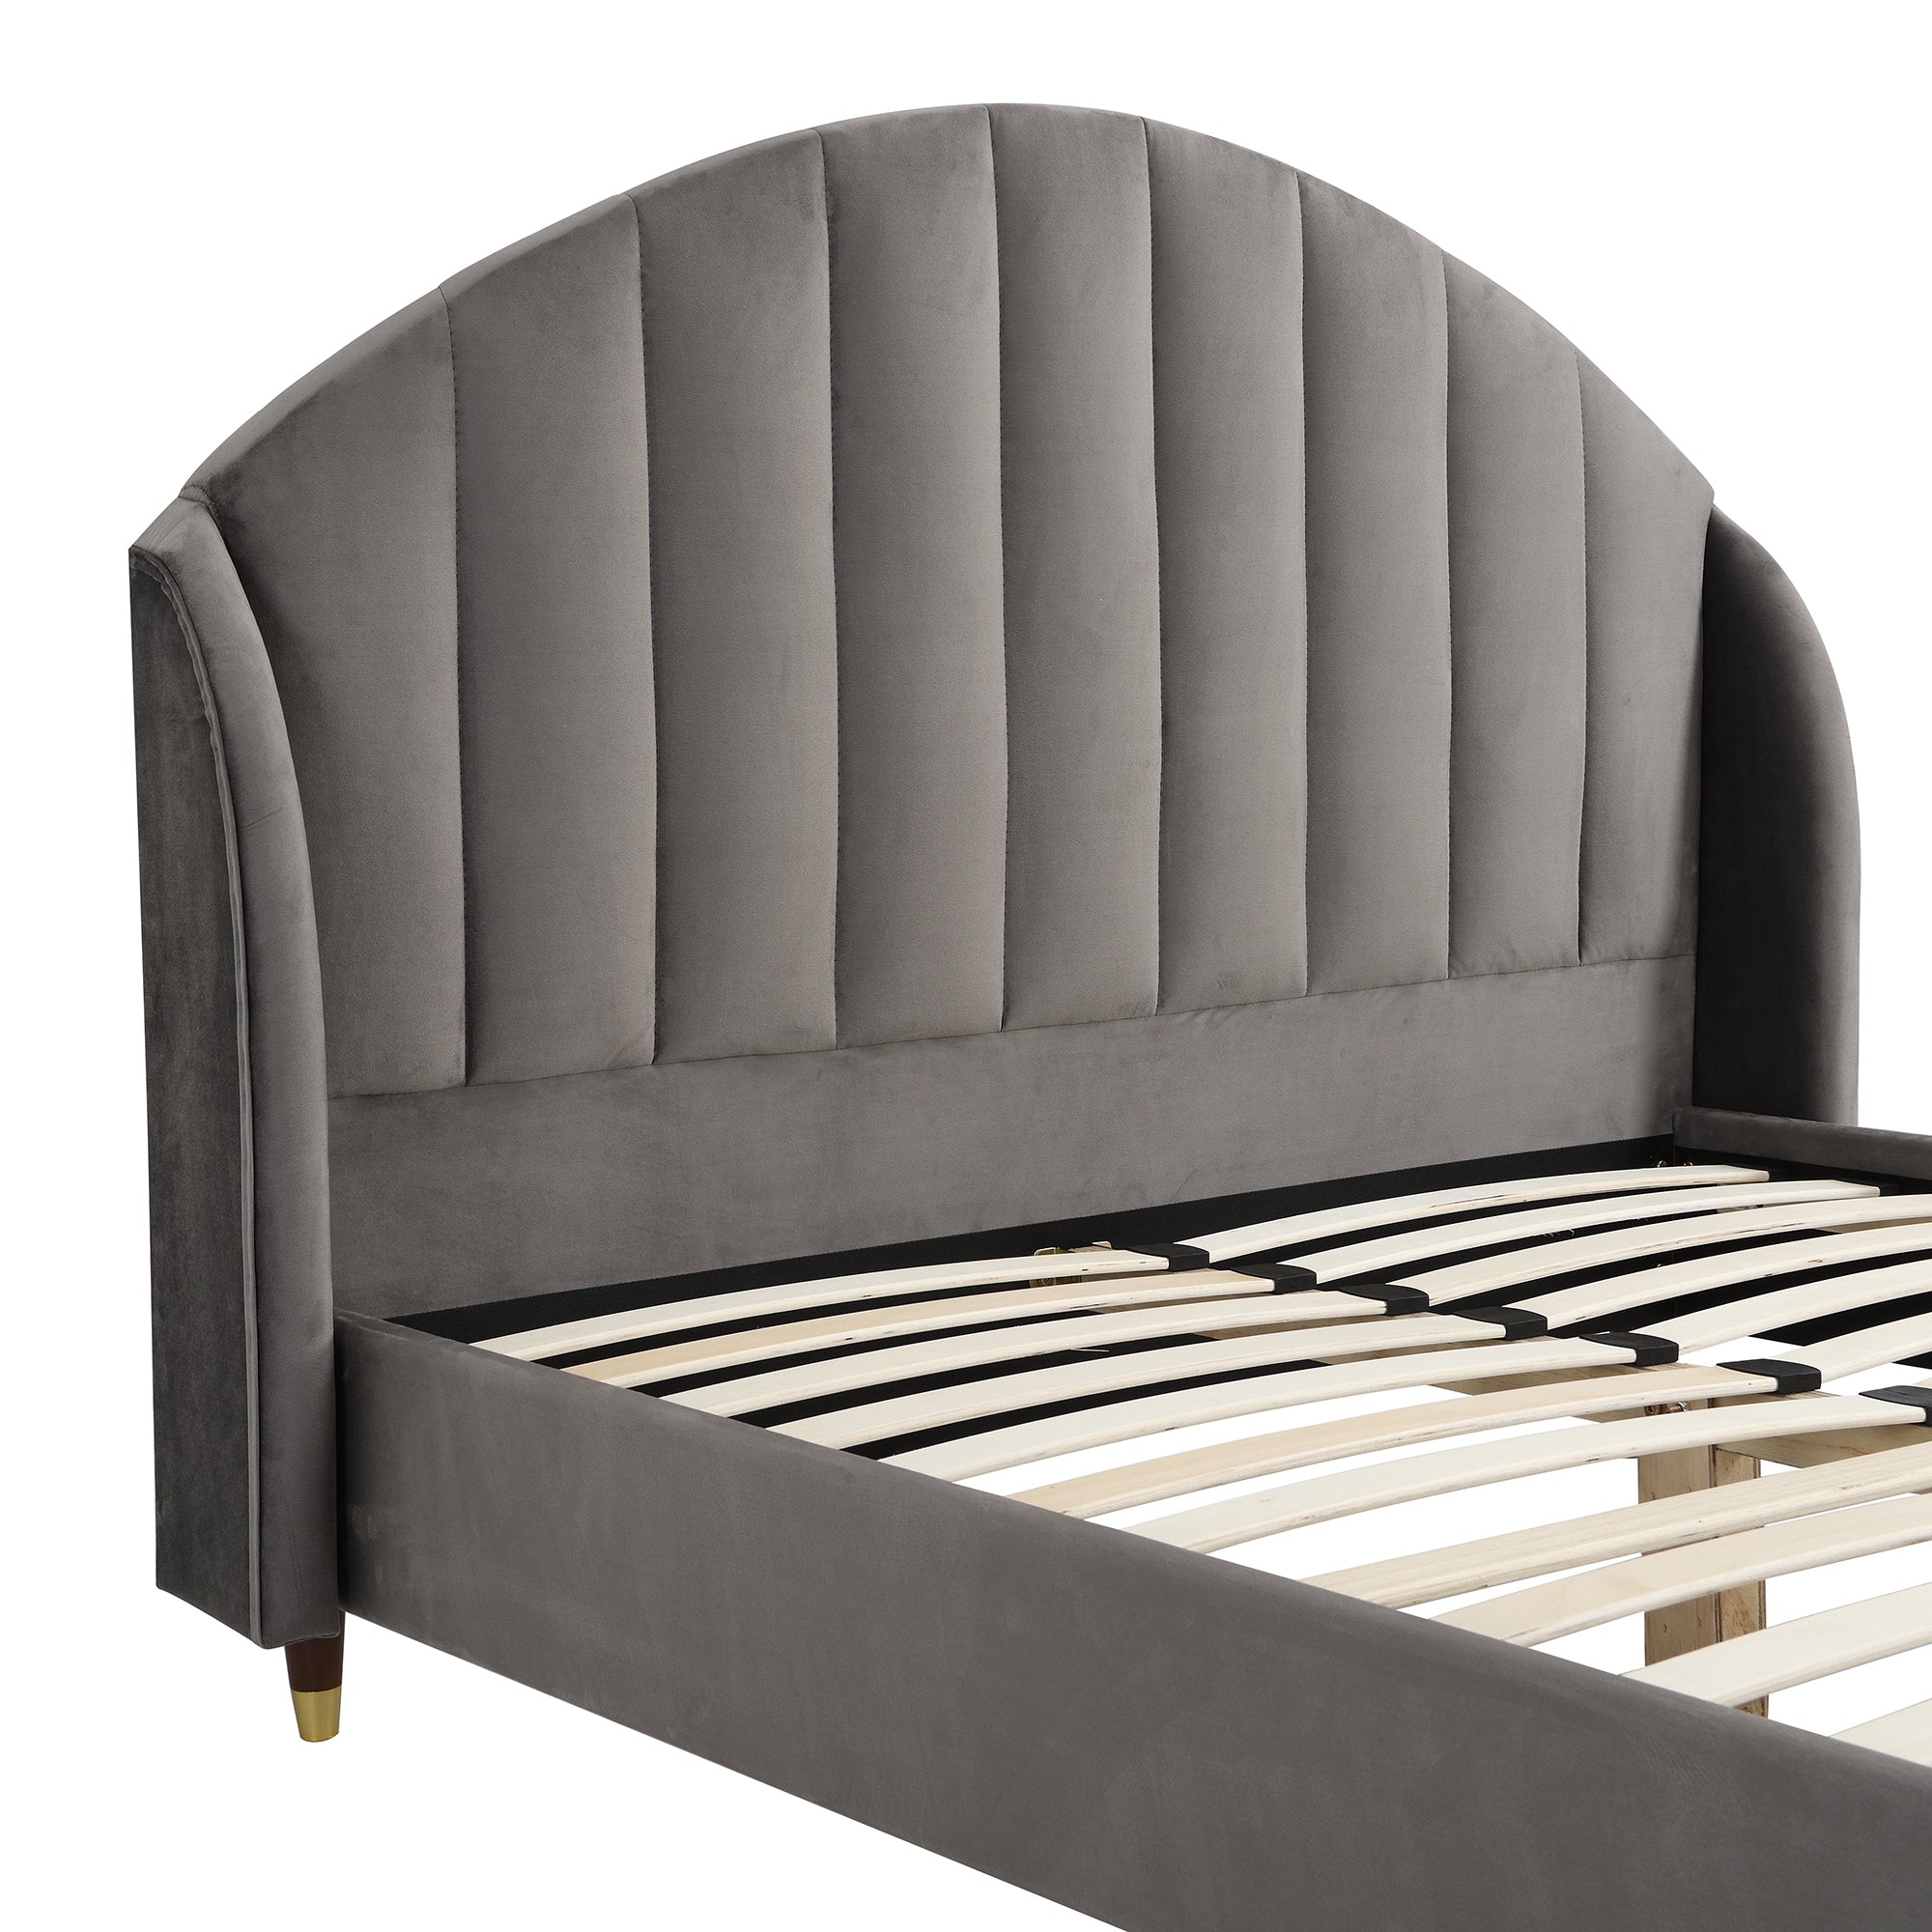 Eleanor Grey Velvet Upholstered Bed Frame with Domed Headboard